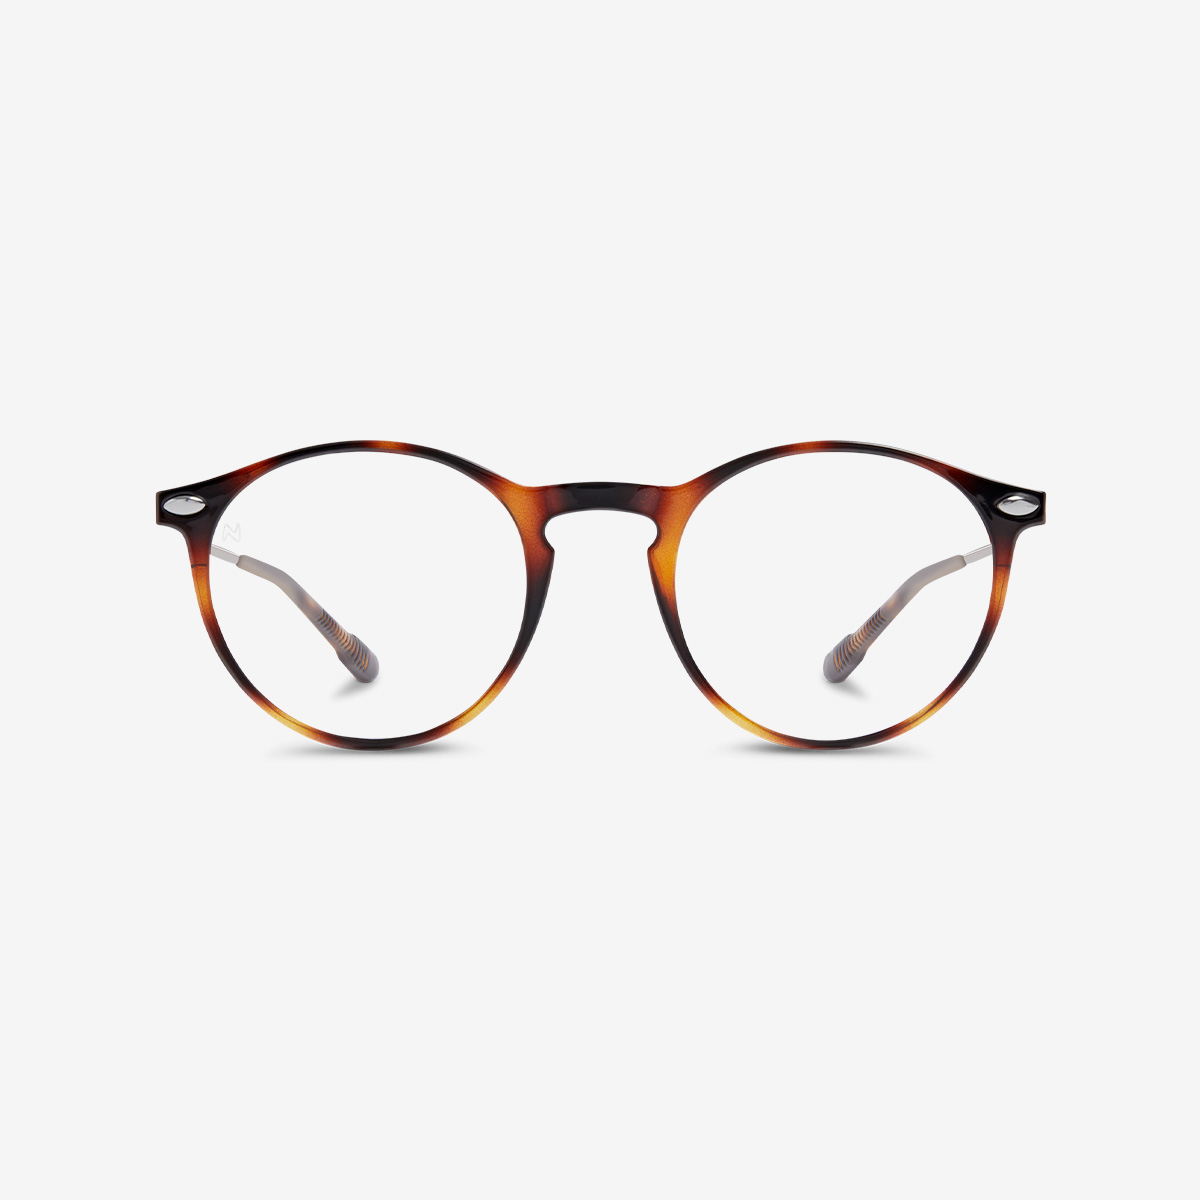 Nooz Optics | Blue Light glasses I Sunglasses I Reading glasses